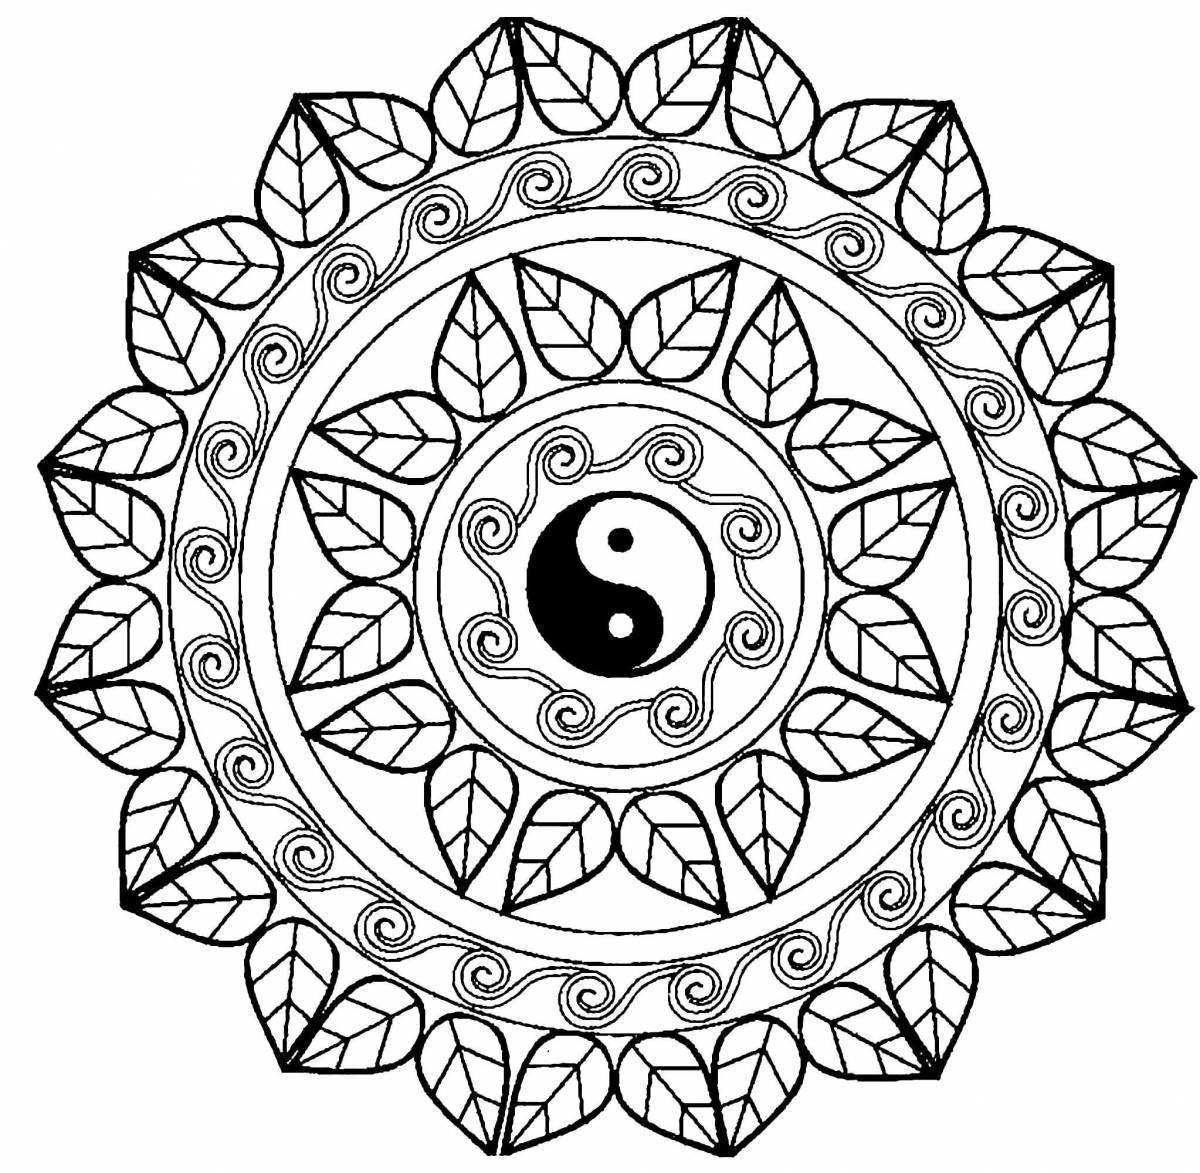 Magic coloring video meditative mandala antistress